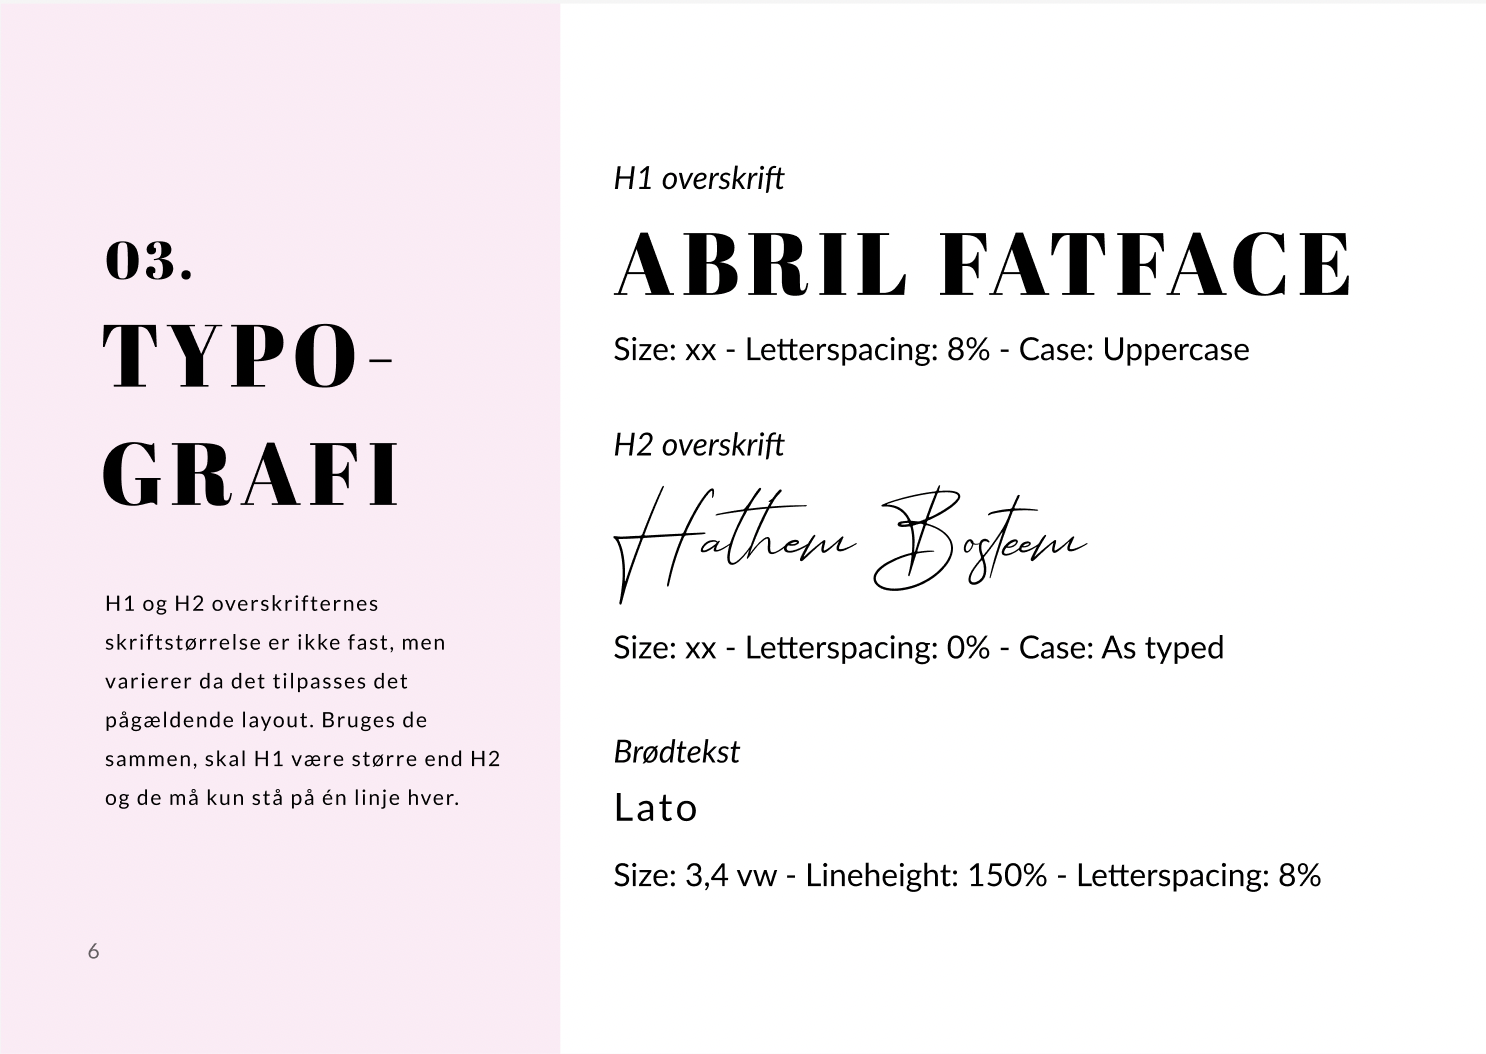 typografi